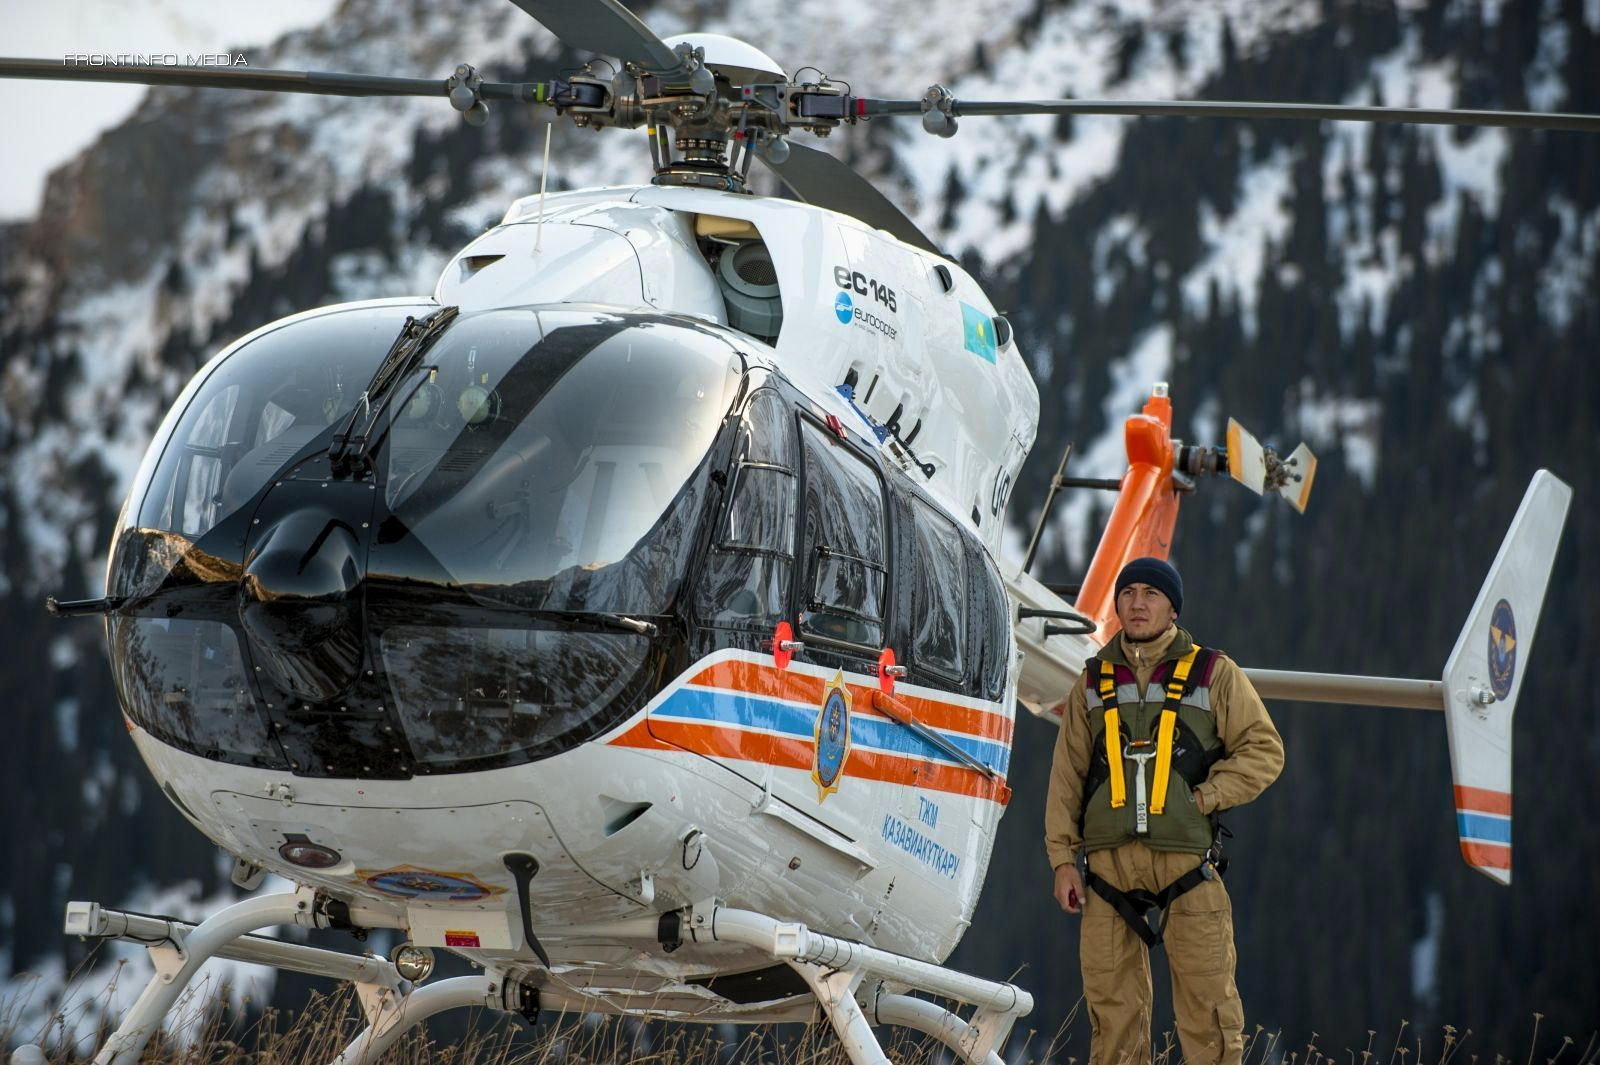 Вынужденную посадку совершил вертолет "Казавиаспаса" из-за неполадок в двигателе